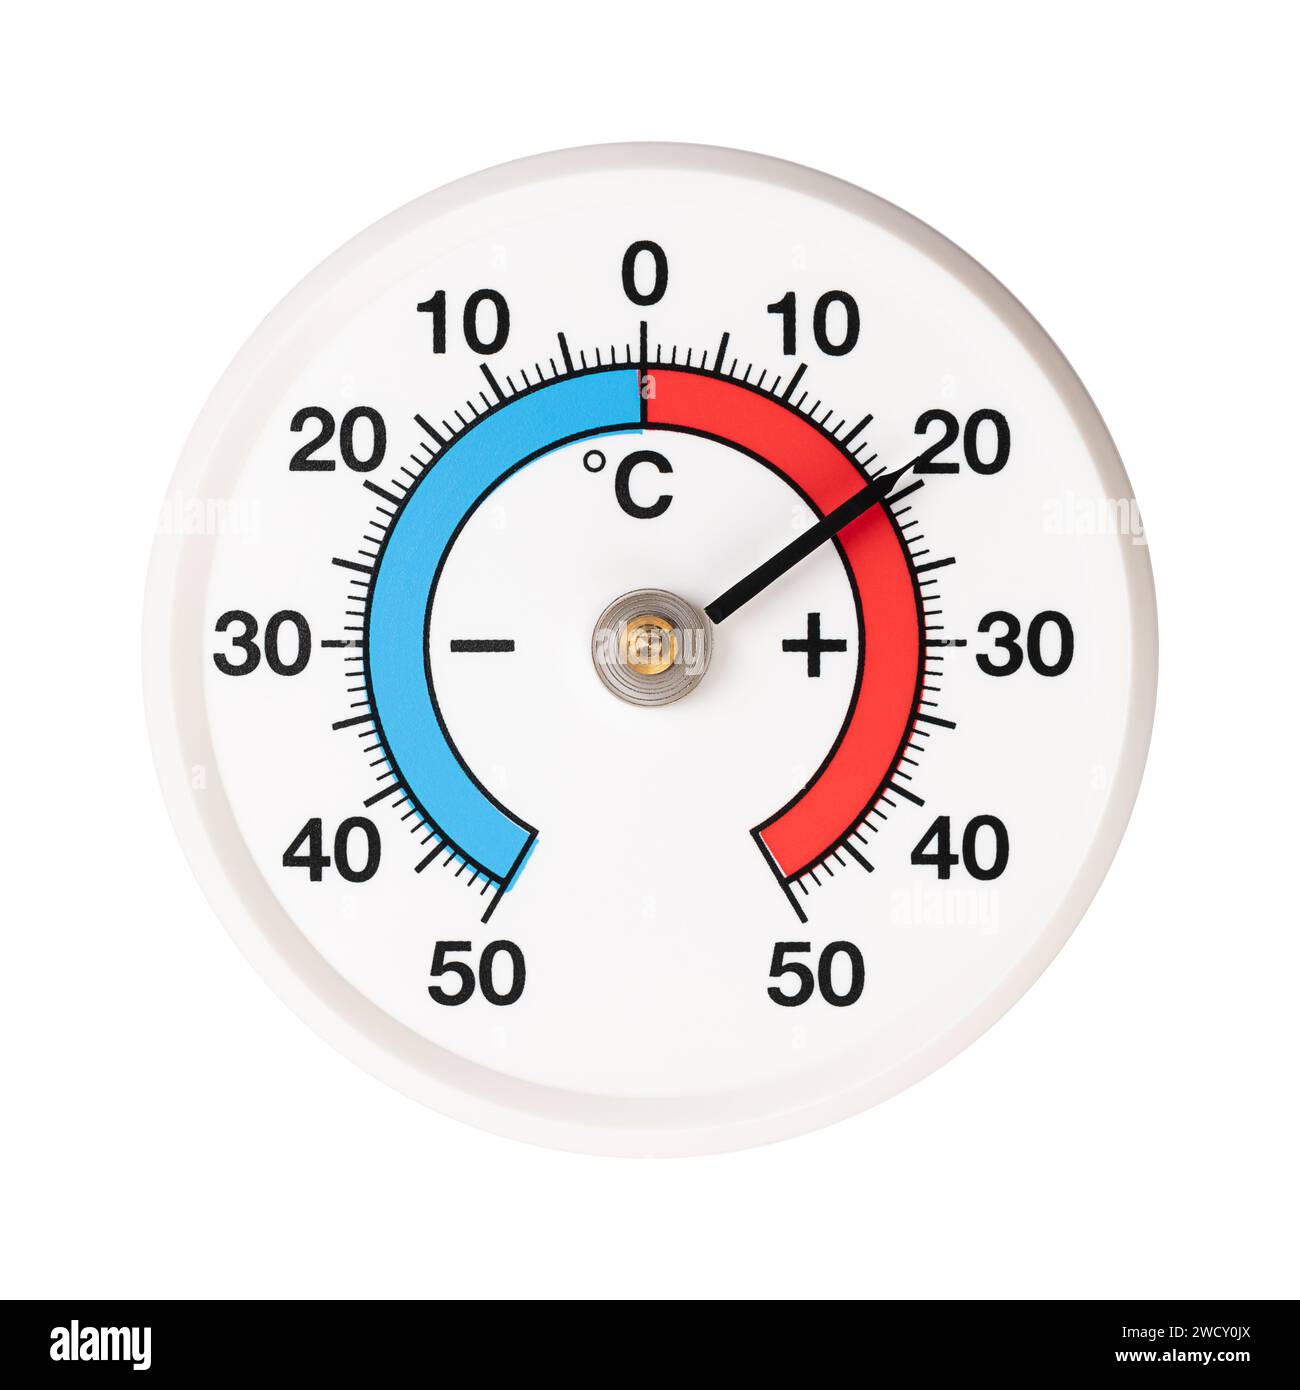 Spiralstreifen-Bimetallthermometer mit Graduierung in Celsius. Temperaturänderungen erweitern oder verringern die beiden Metallstreifen unterschiedlich. Stockfoto